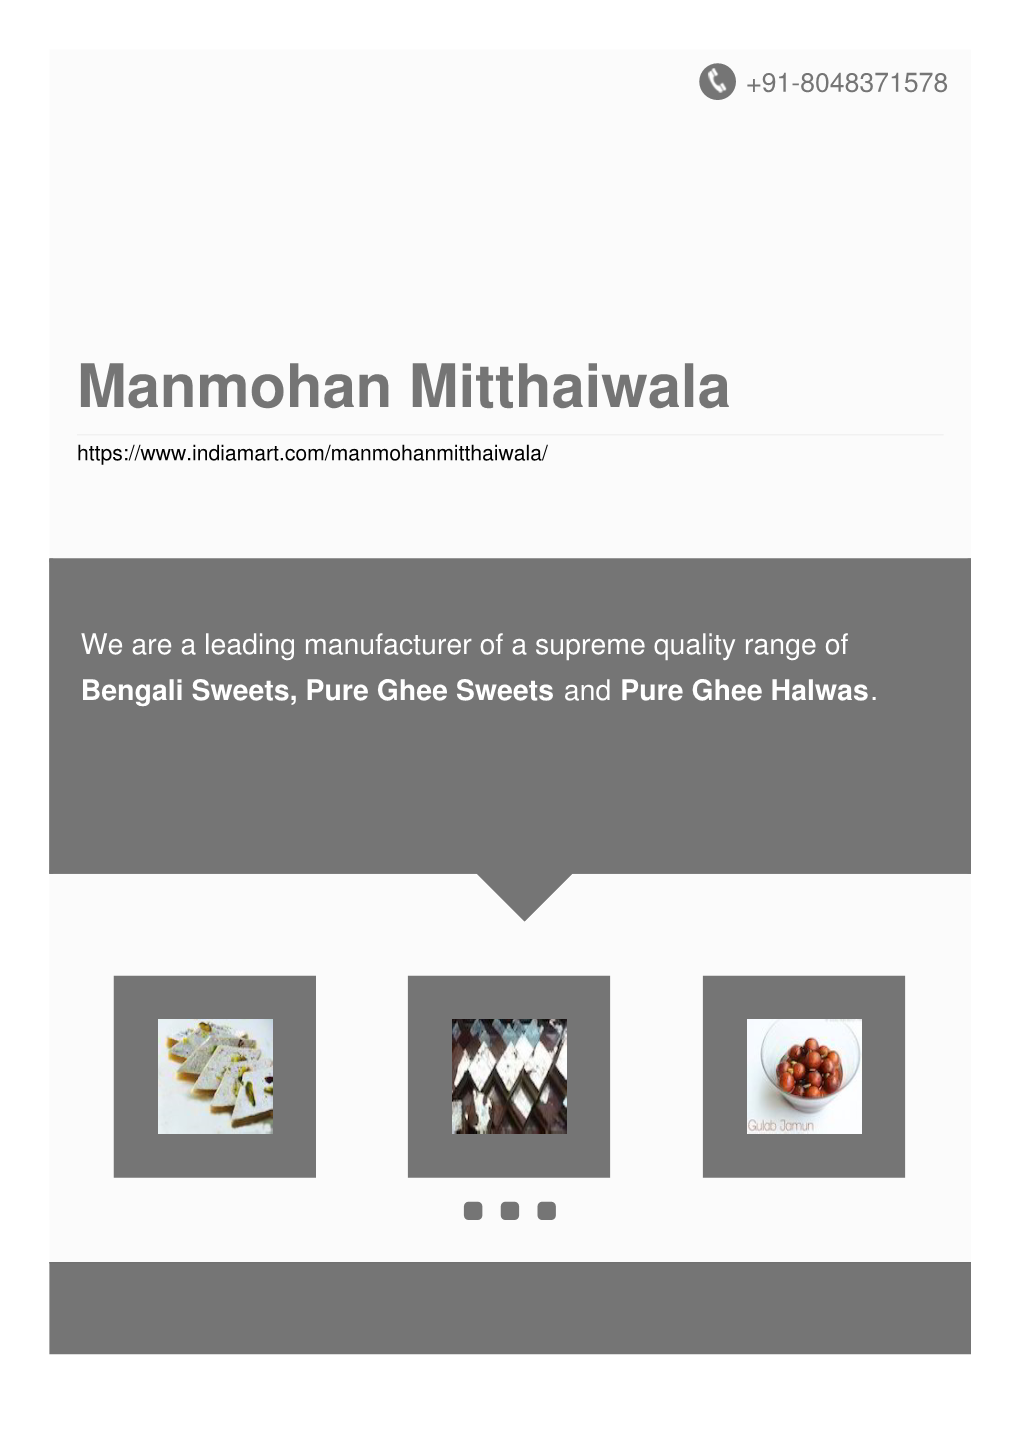 Manmohan Mitthaiwala